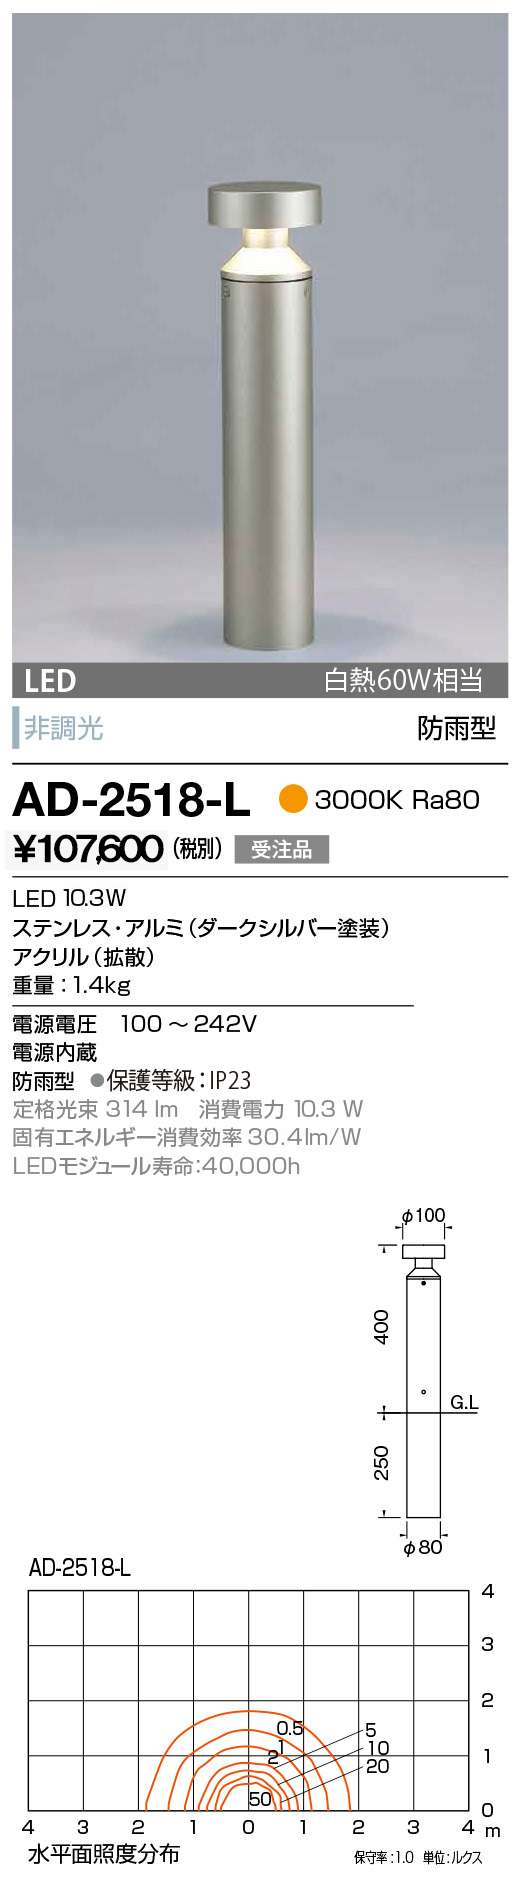 AD-2657-L 山田照明 ガーデンライト 黒色 LED - 3